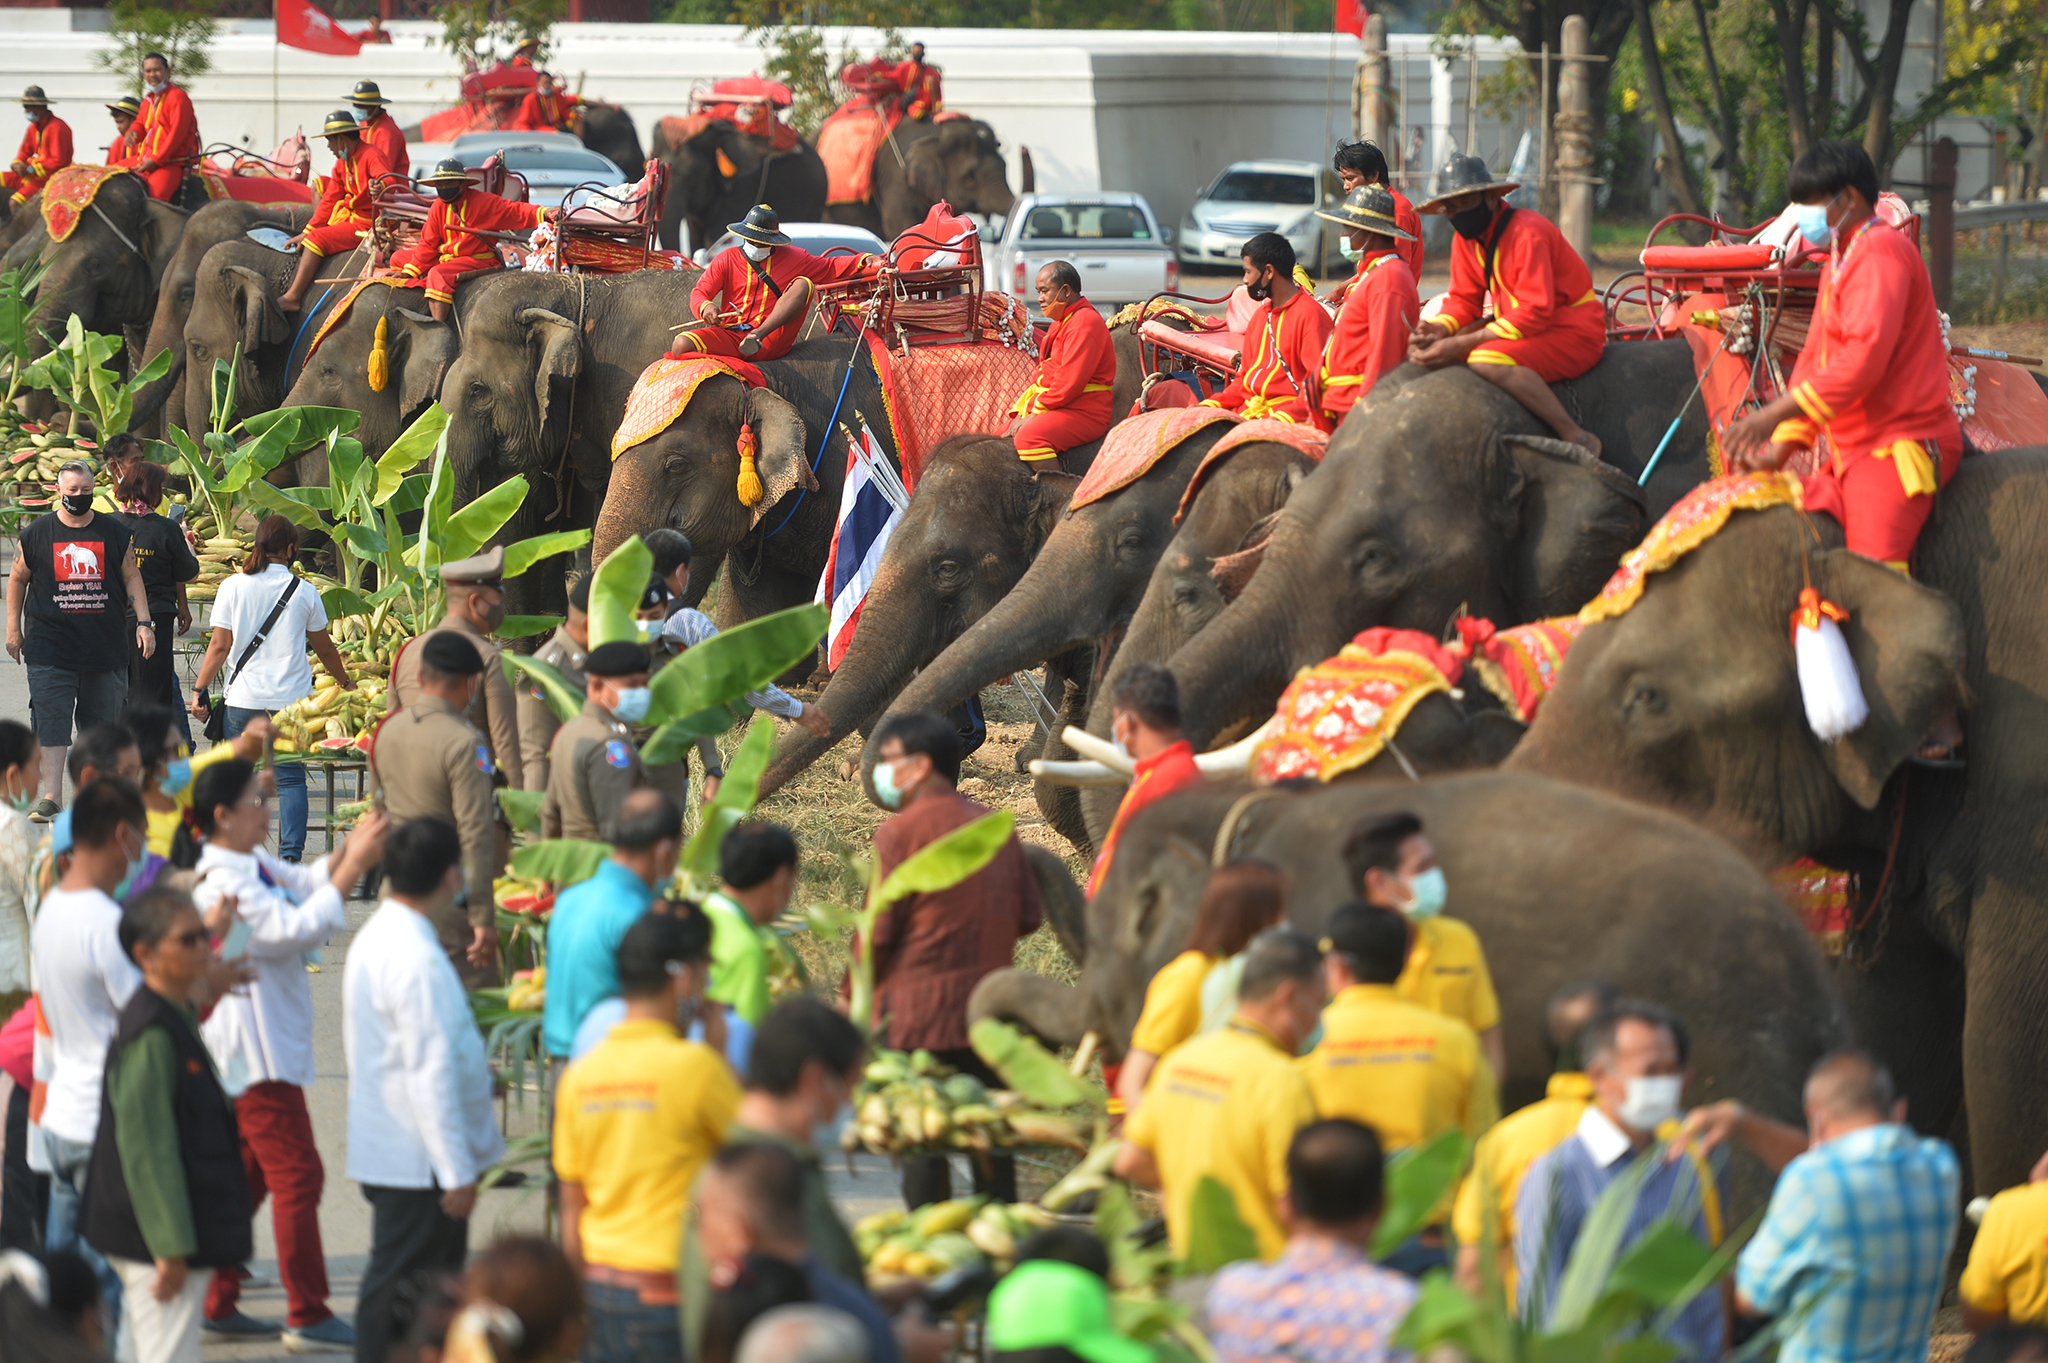 泰国马沙大象营开放 游客与大象亲密接触